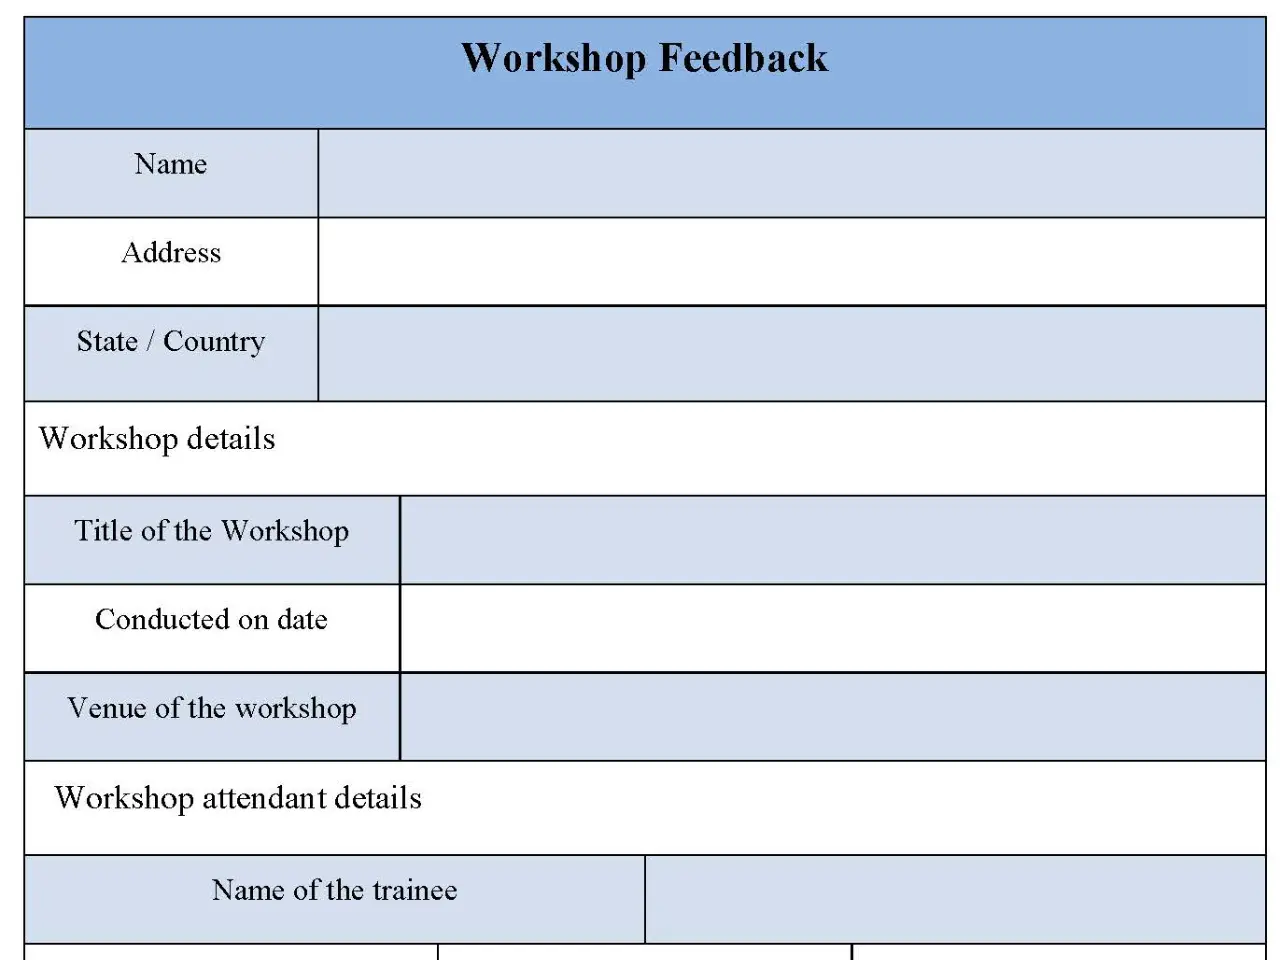 Workshop Feedback Form